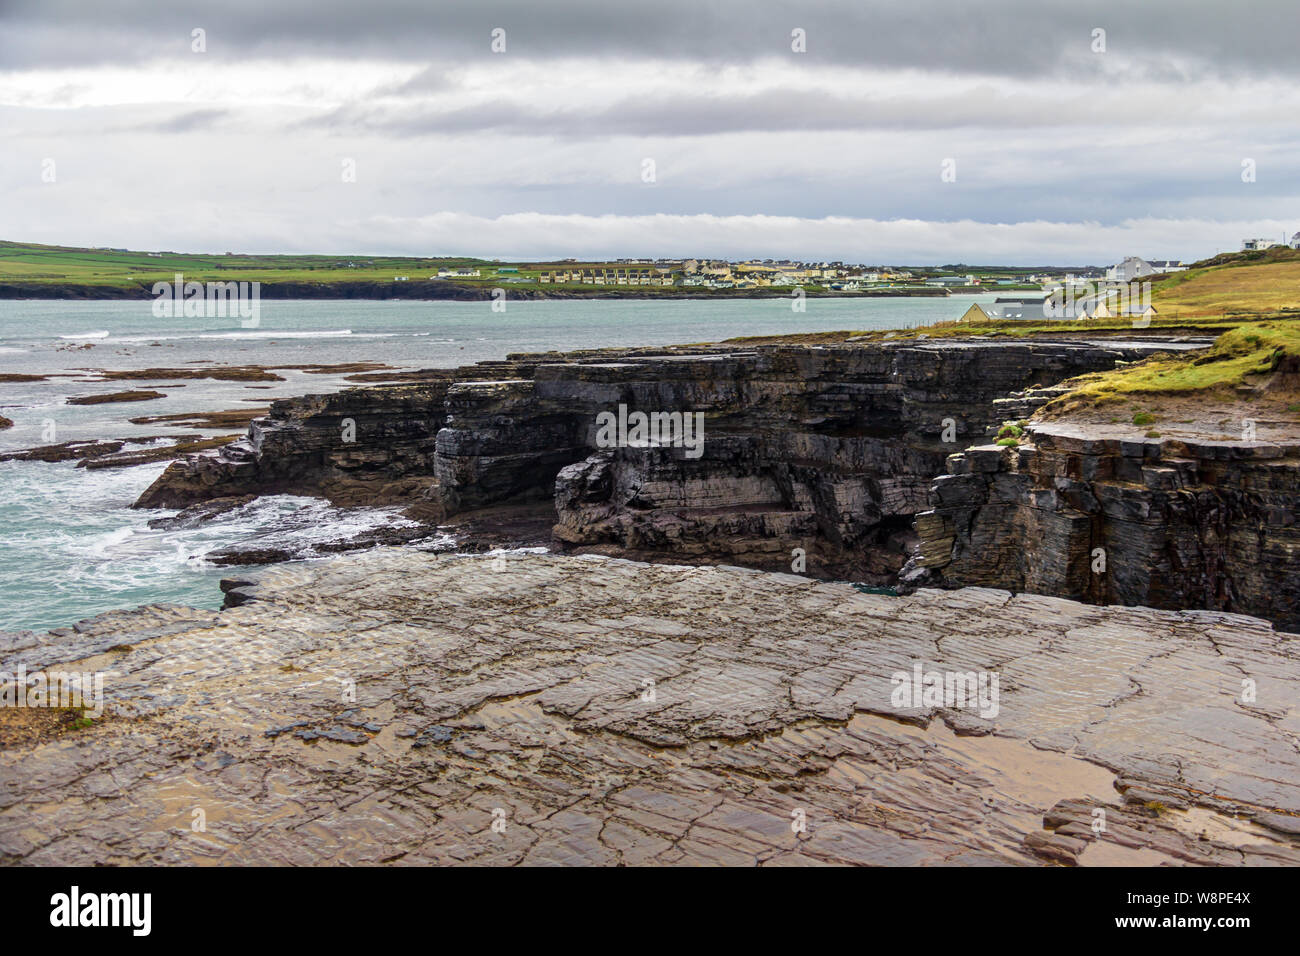 Che circonda la città balneare di Kilkee, County Clare, in Irlanda sono interessanti scogliere con molti originali formazioni rocciose Foto Stock